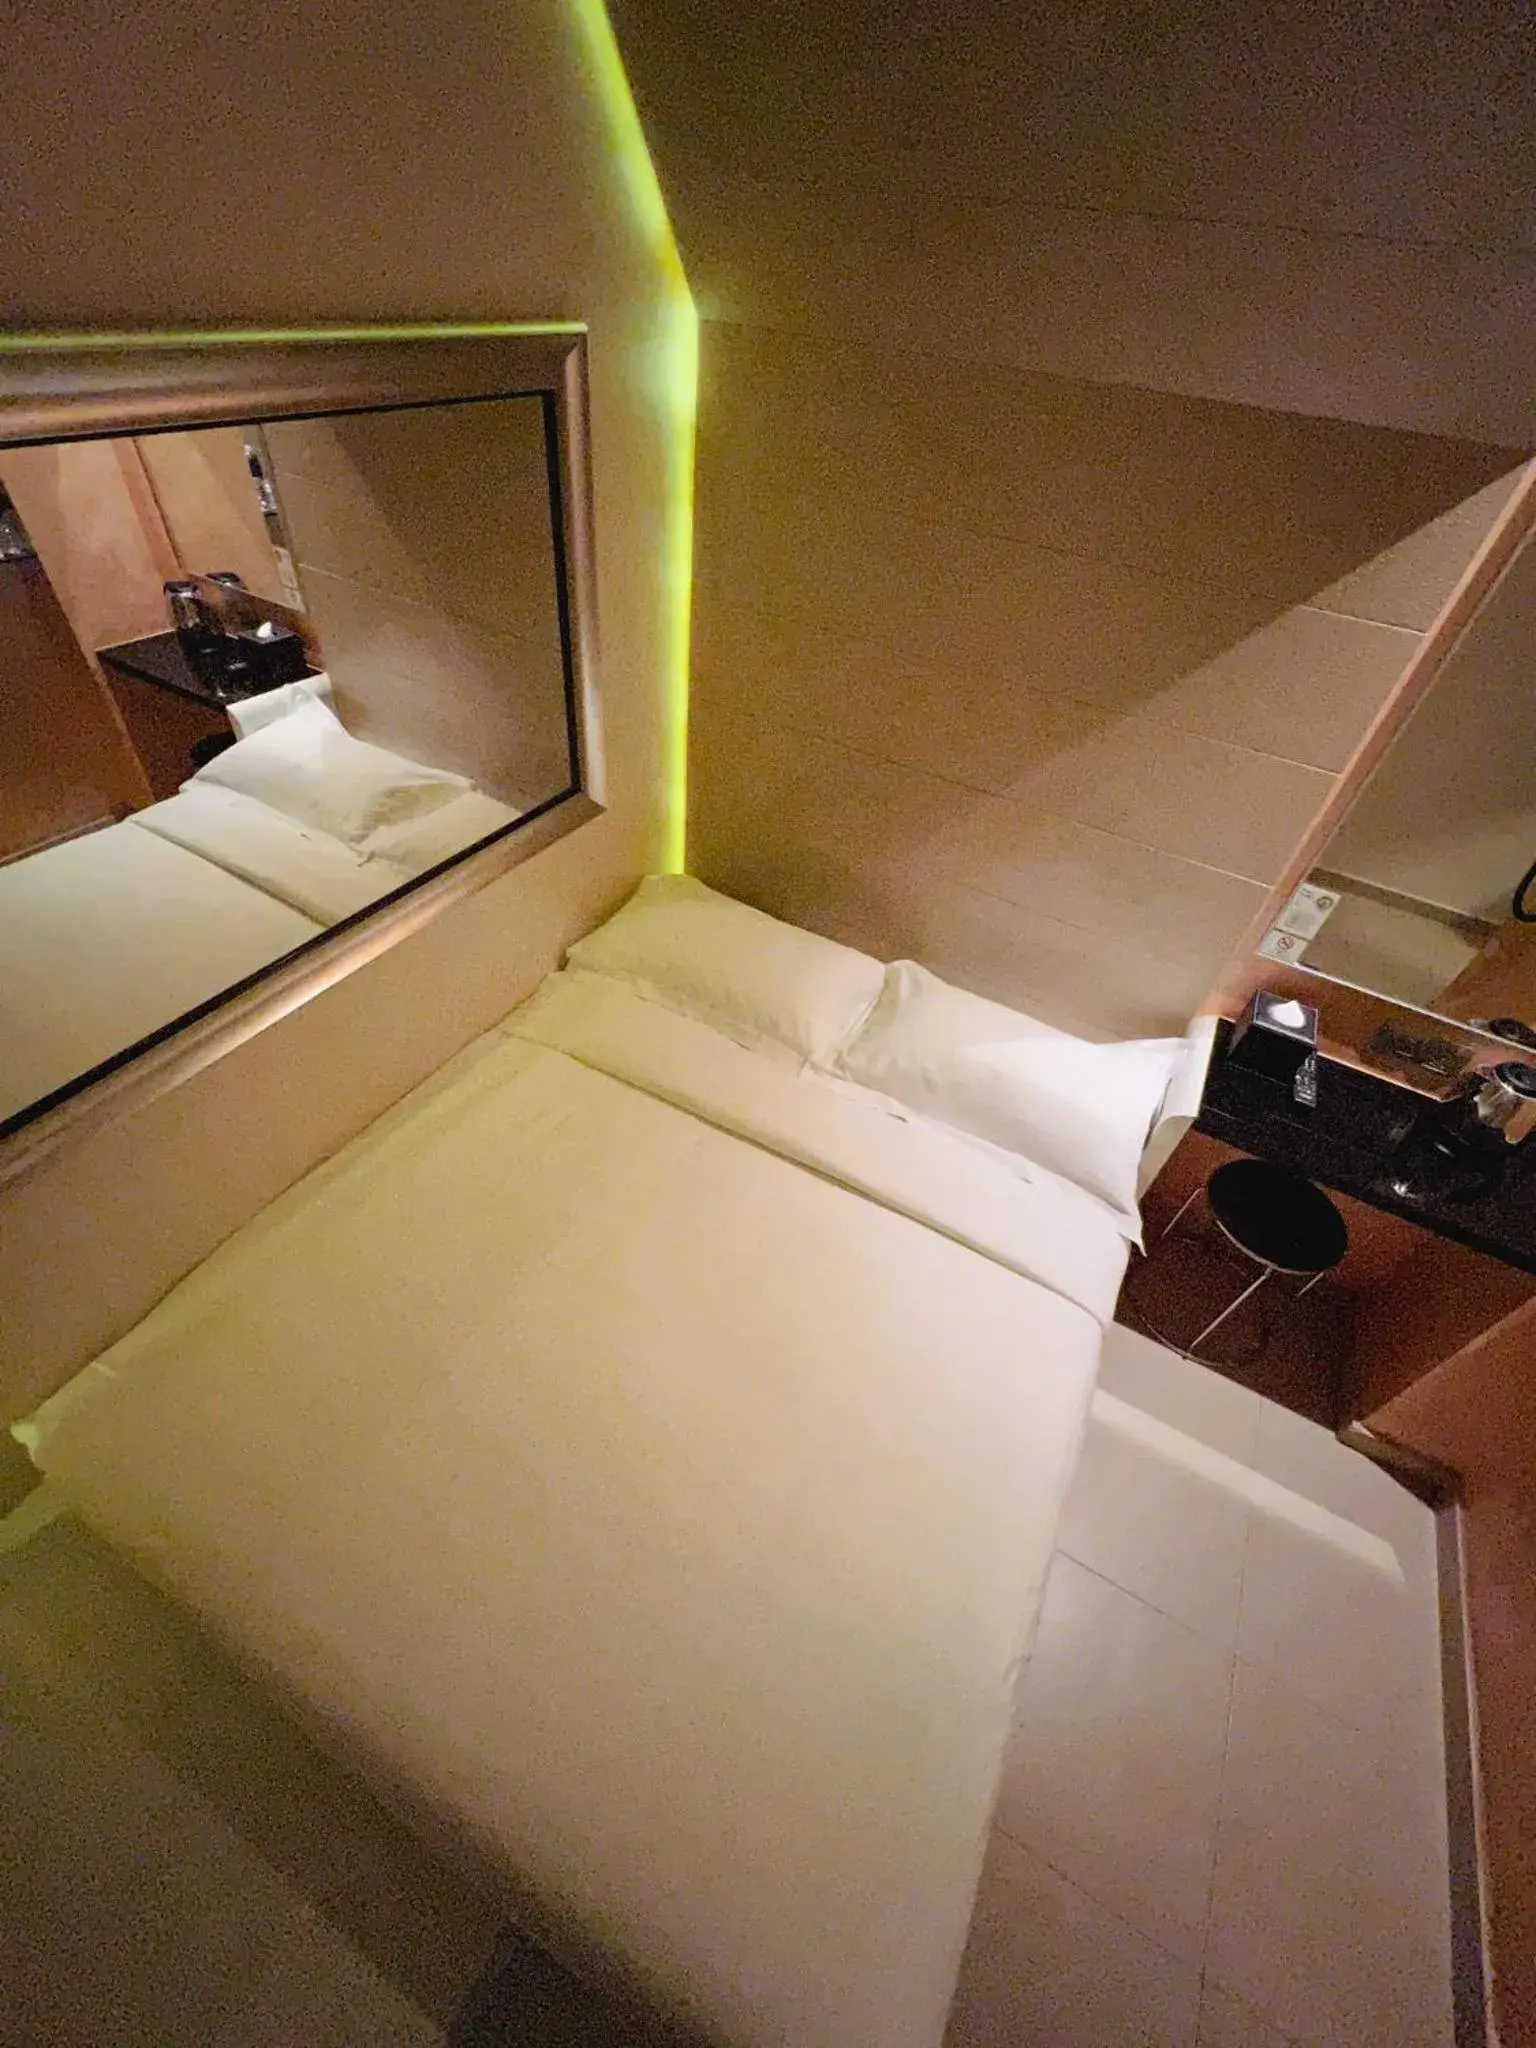 Bed in Fragrance Hotel - Viva